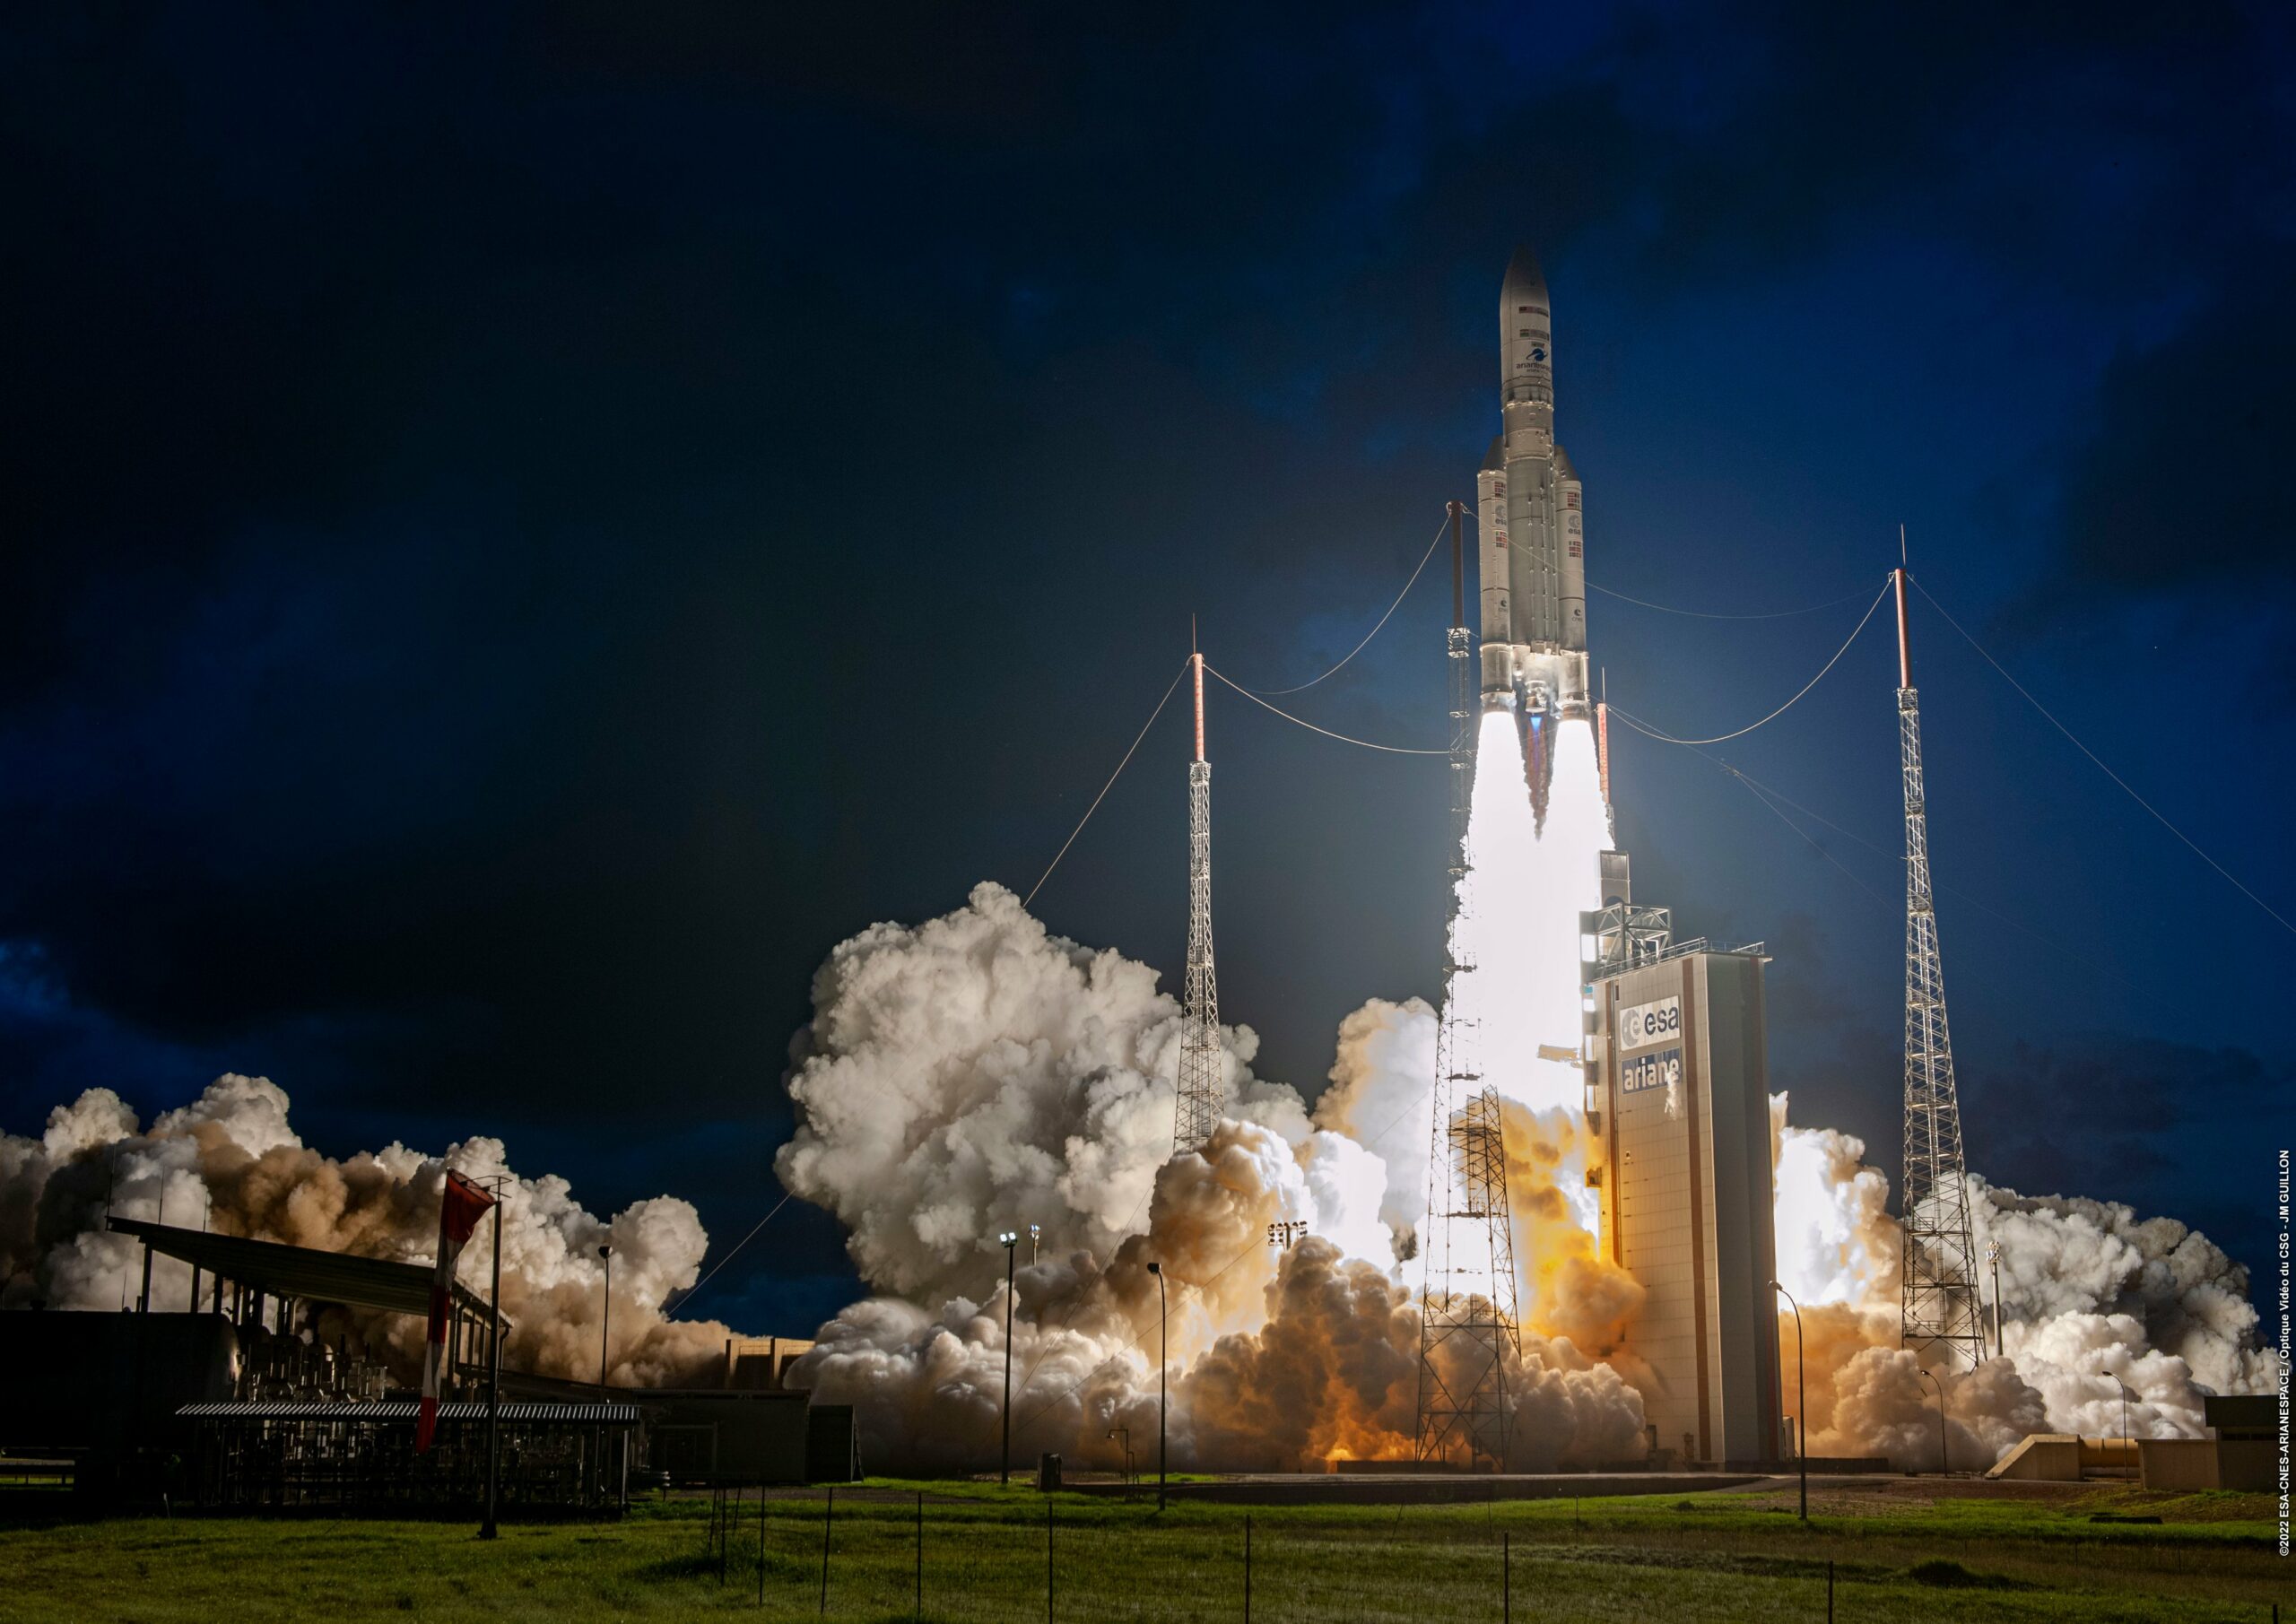 La Germania investe nello sviluppo del razzo francese Ariane 7 per competere con SpaceX